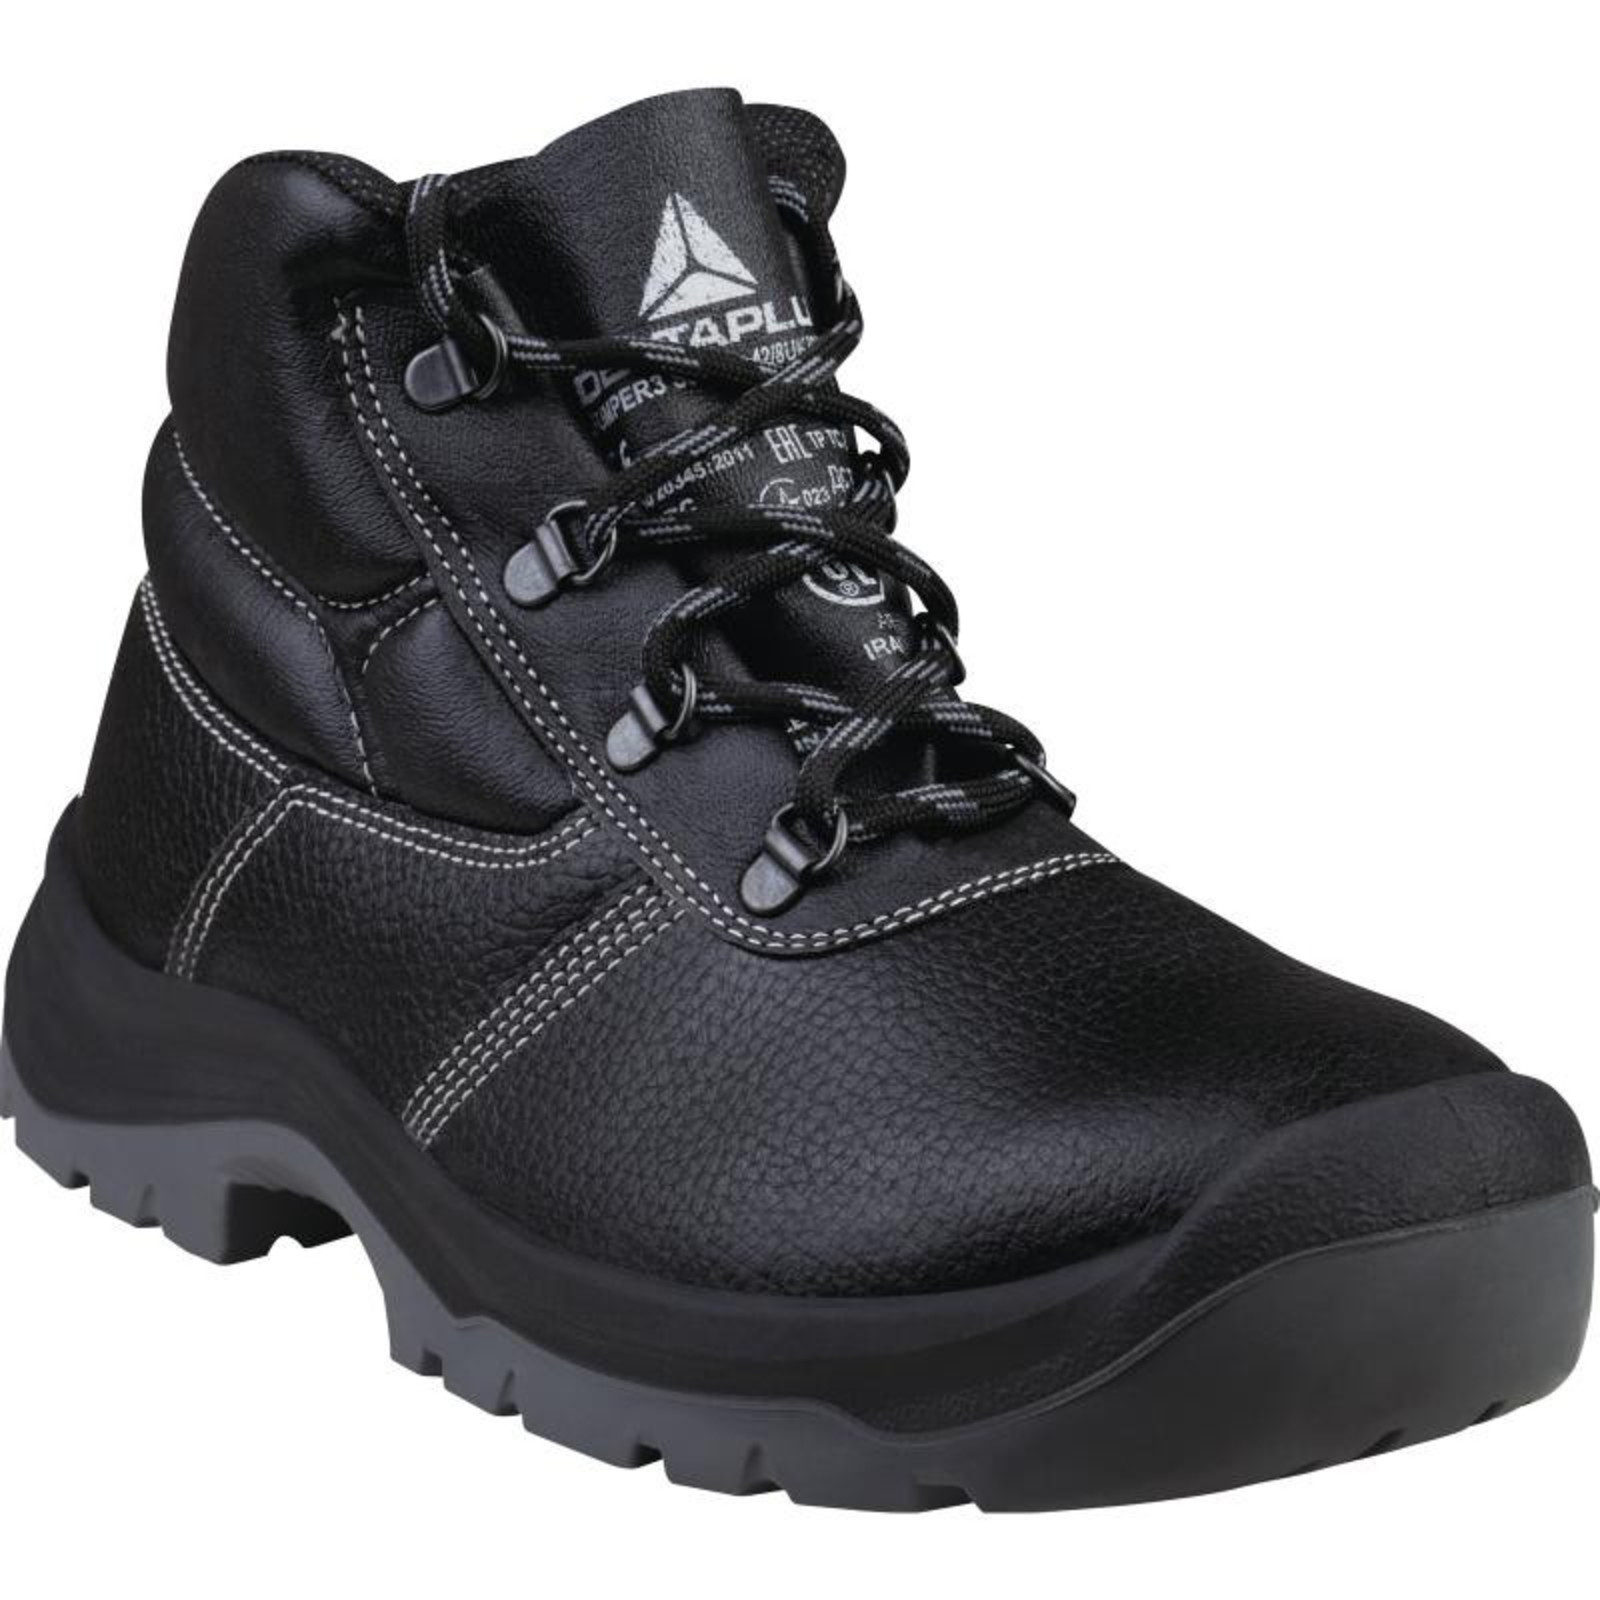 Členková bezpečnostná obuv Delta Plus Jumper3 S3 SRC - veľkosť: 37, farba: čierna